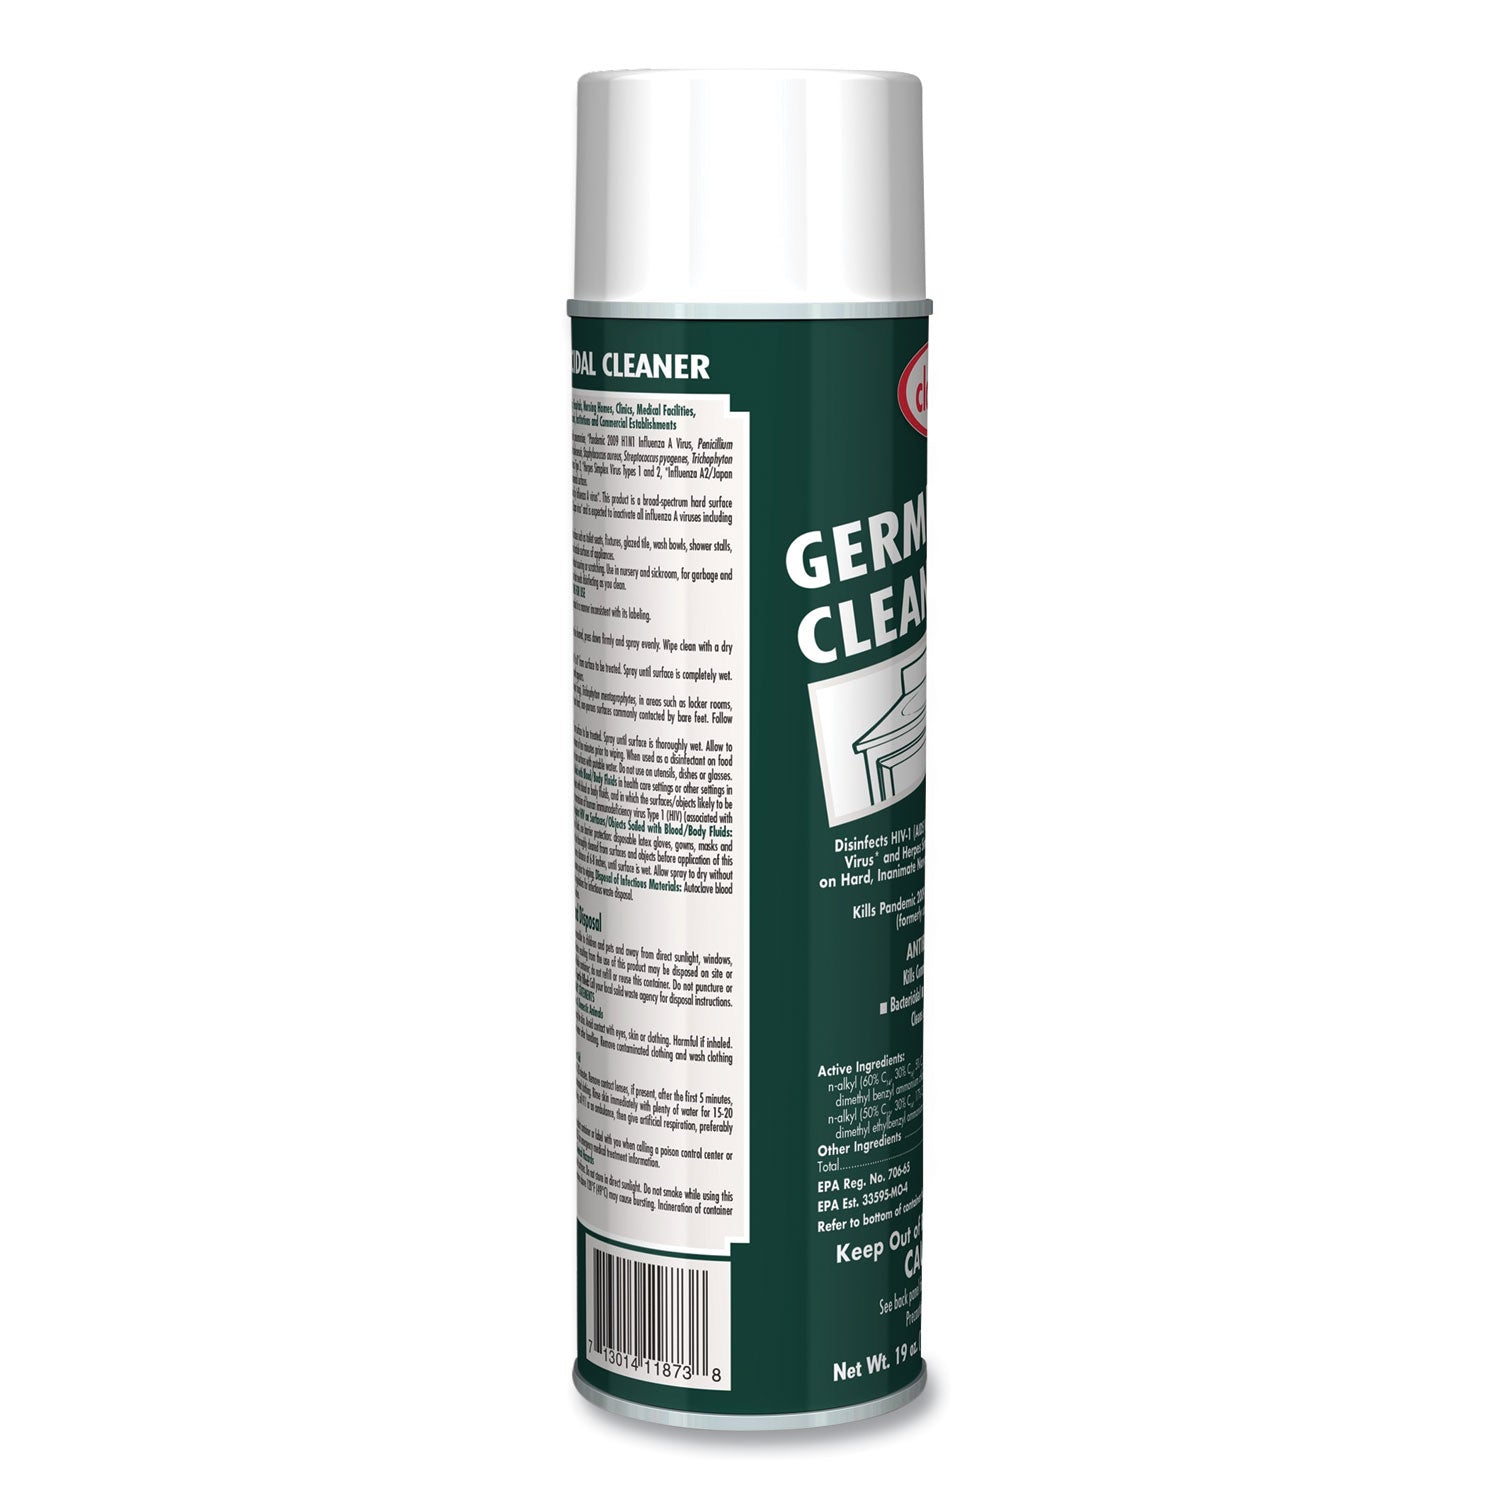 germicidal-cleaner-floral-scent-19-oz-aerosol-spray-dozen_cgc873 - 2